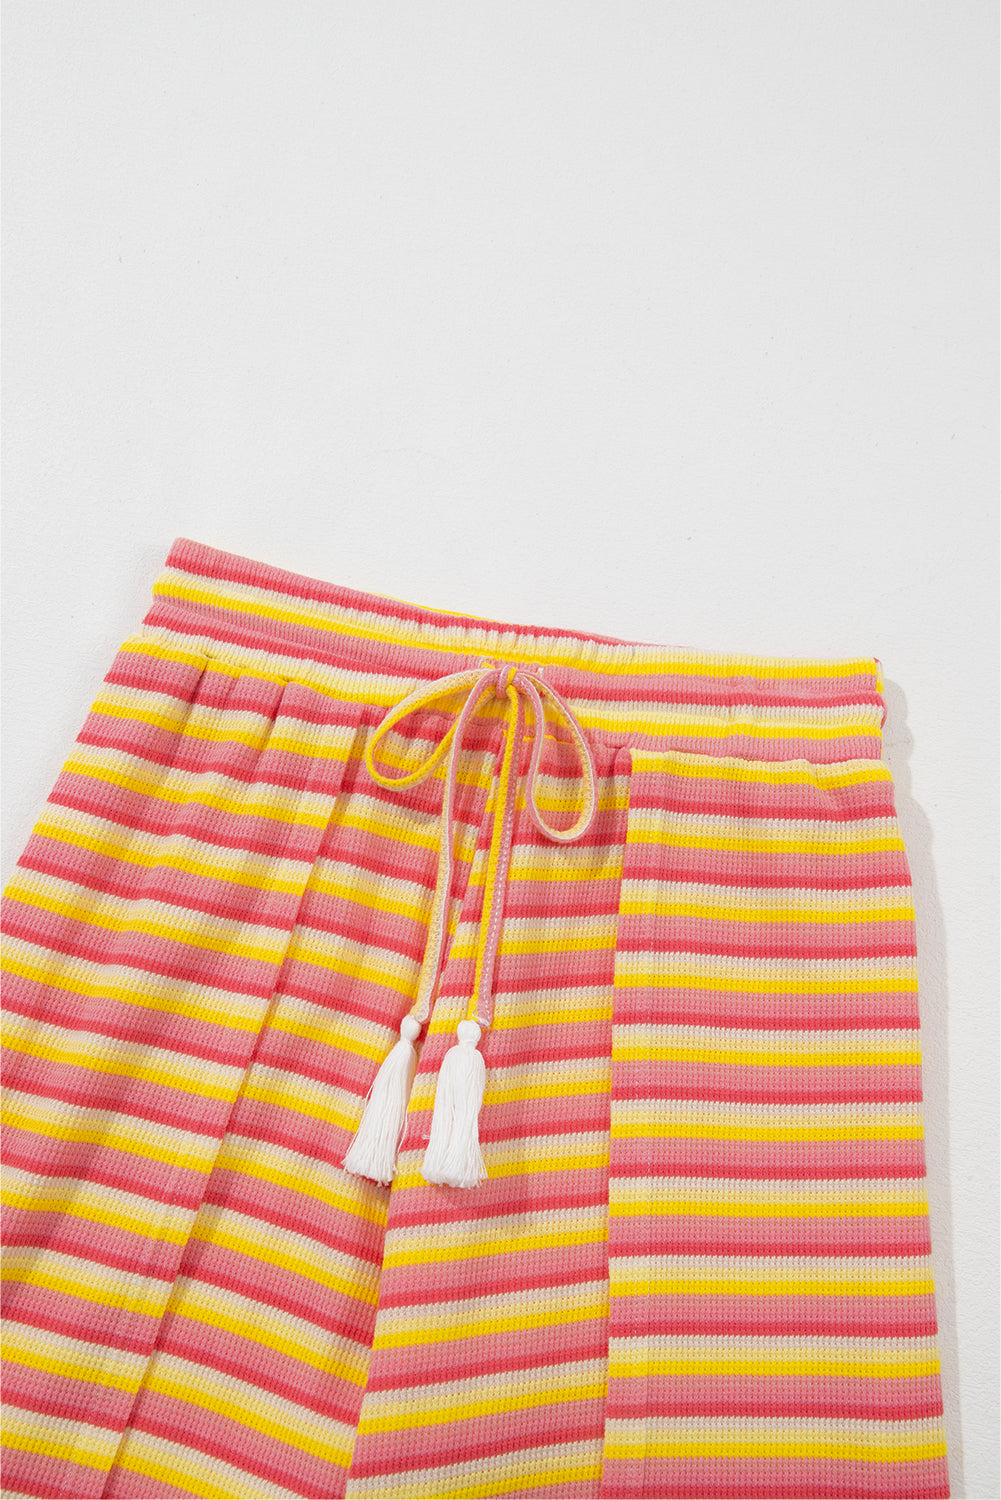 Komplet hlača širokih nogavica s žutim prugama u duginim bojama s resicama